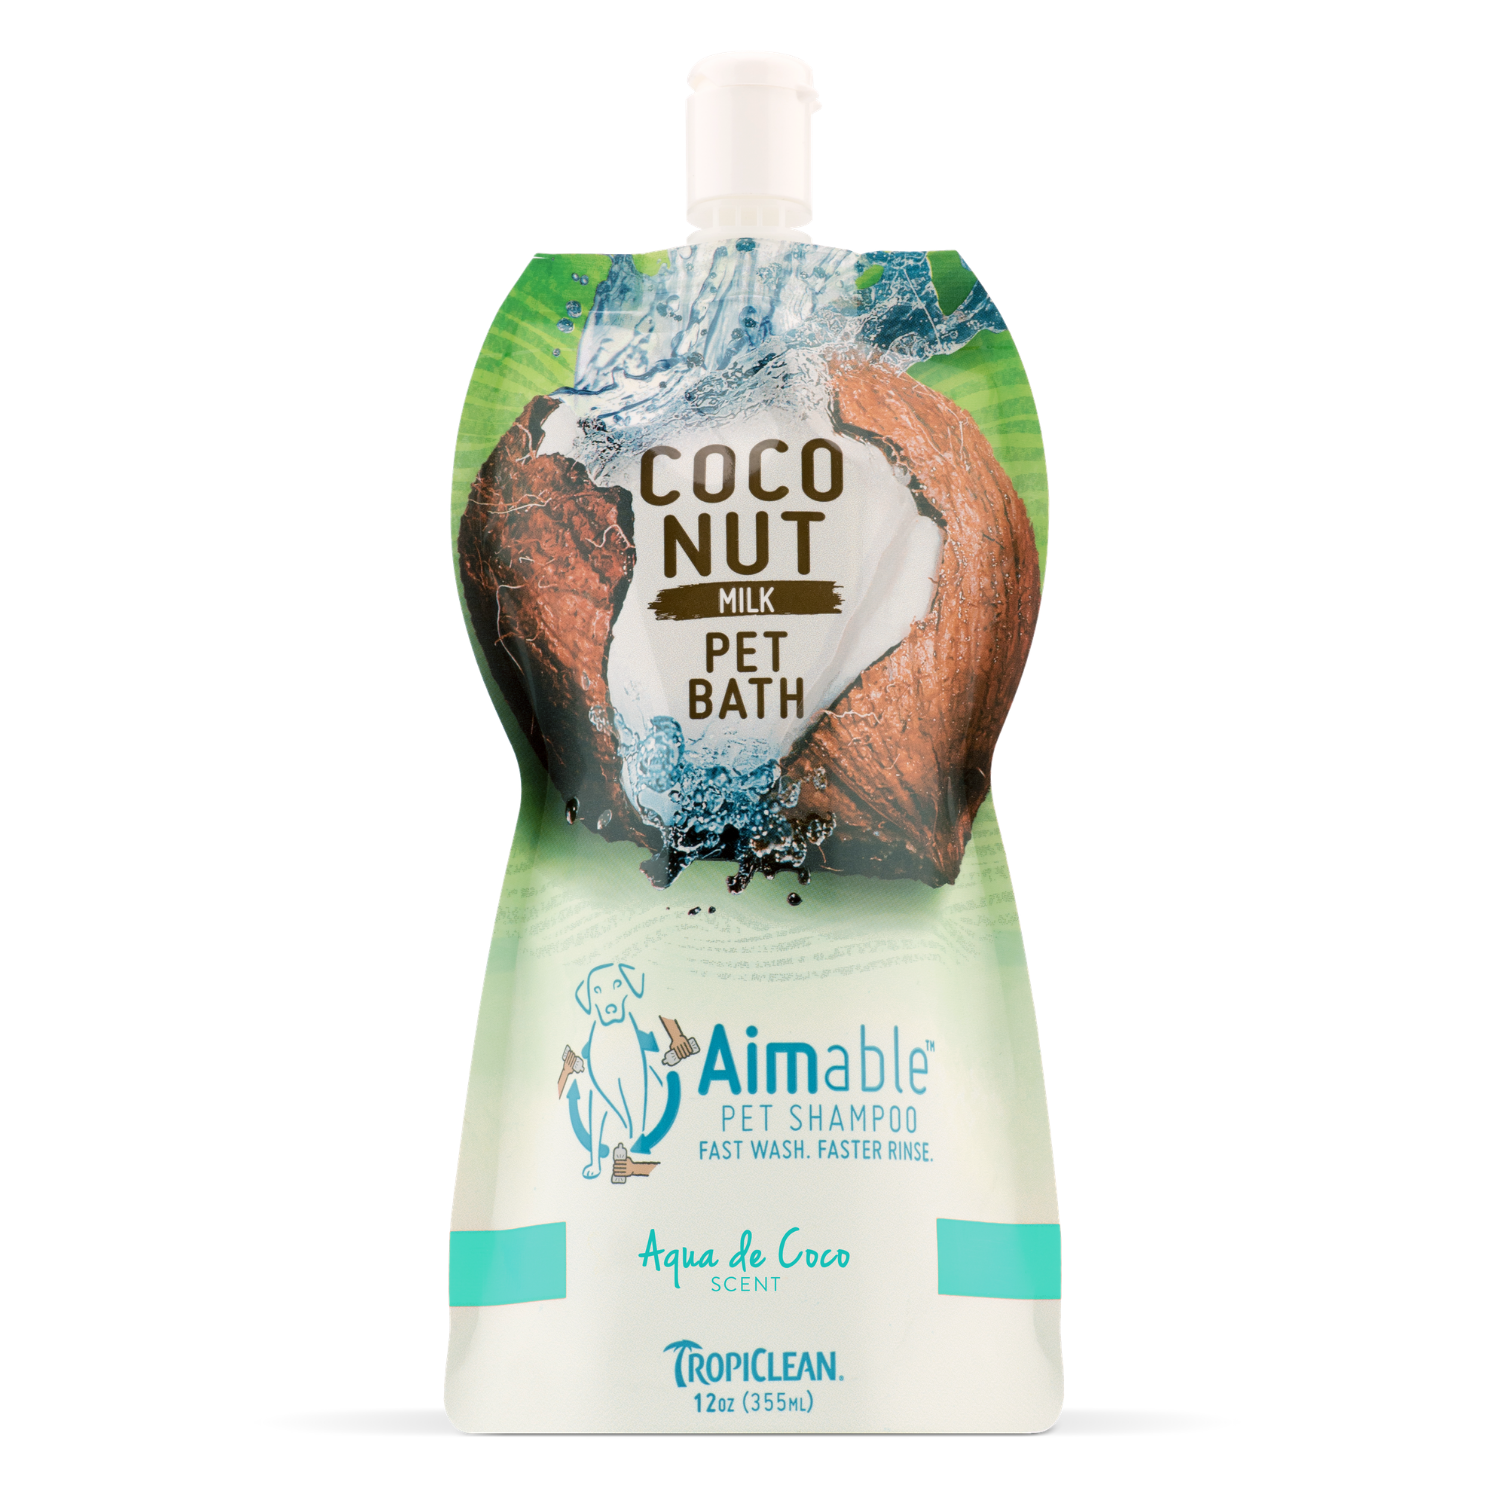 [DISCONTINUED] Tropiclean Aimable Coconut Milk Pet Bath Shampoo  (Aqua de Coco) - 355ml